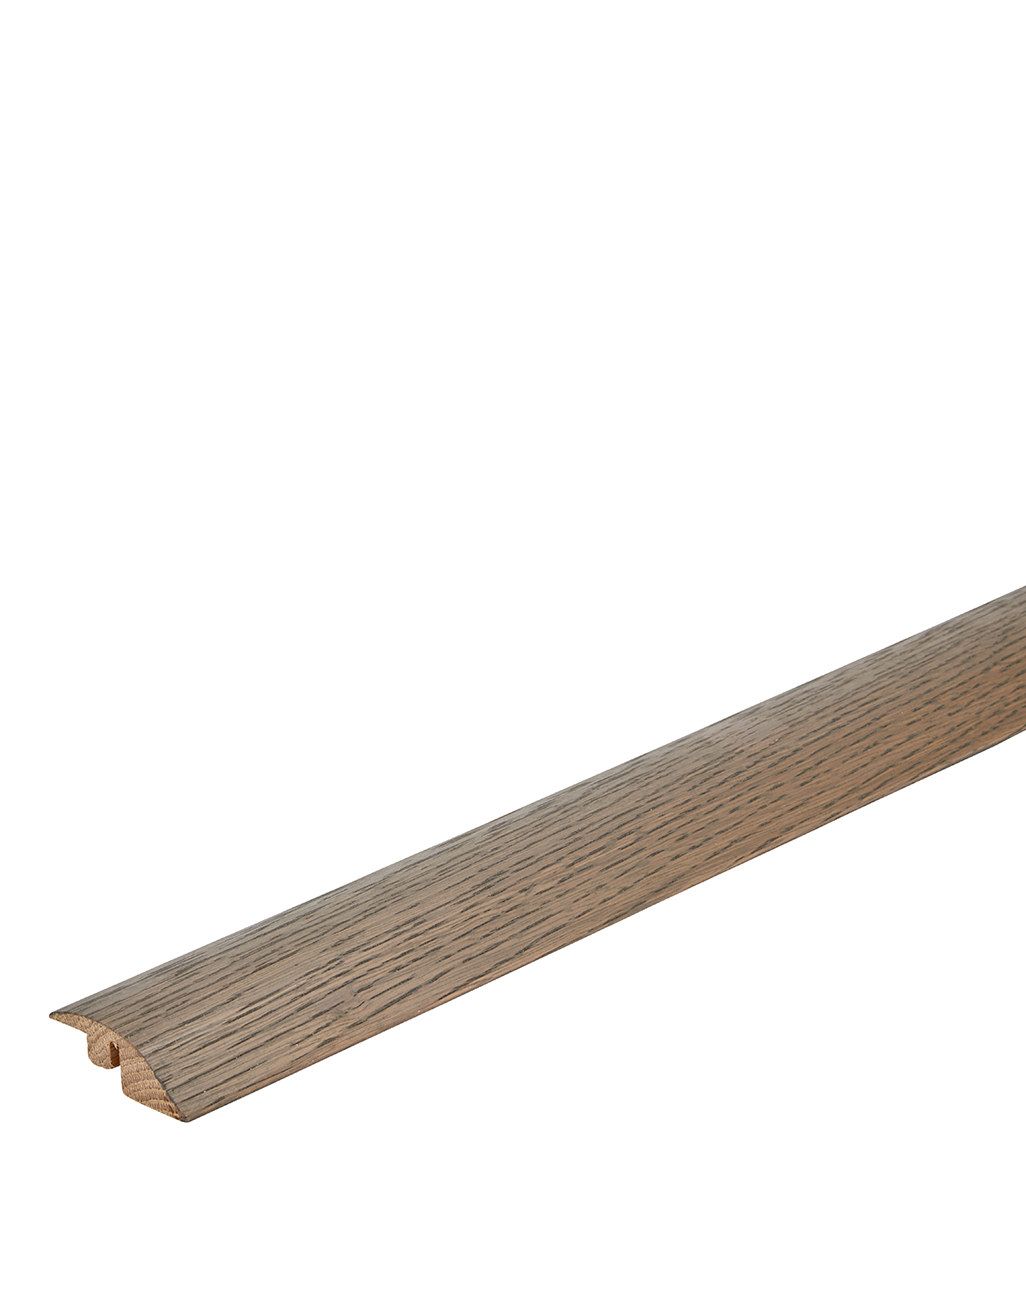 WS10 Solid Oak Ramp Profile 1